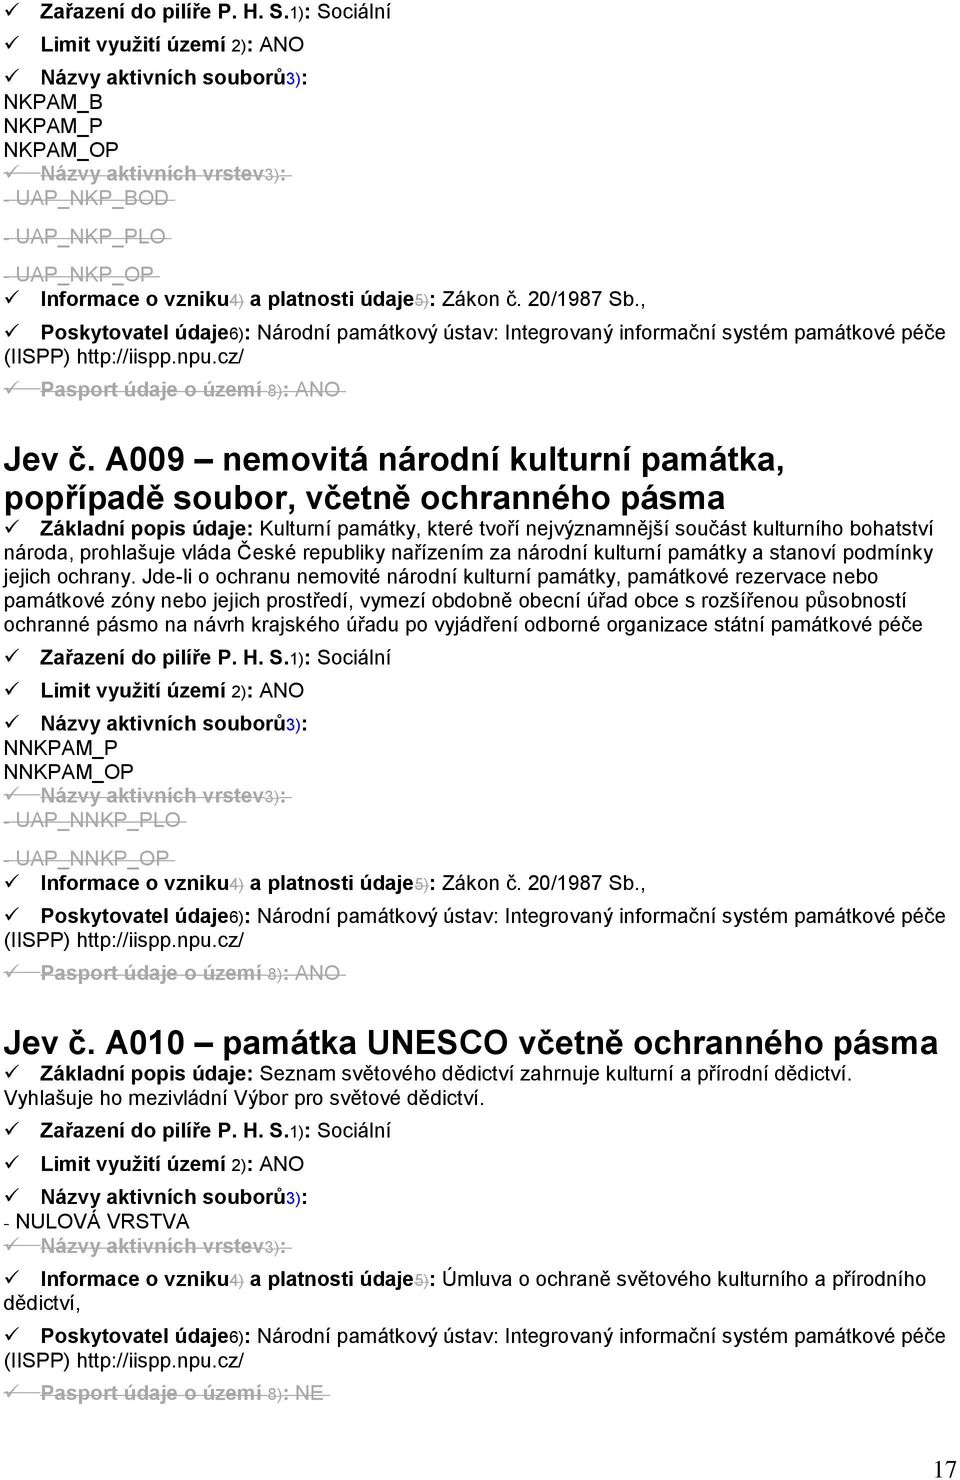 údaje5): Zákon č. 20/1987 Sb., Poskytovatel údaje6): Národní památkový ústav: Integrovaný informační systém památkové péče (IISPP) http://iispp.npu.cz/ Pasport údaje o území 8): ANO Jev č.